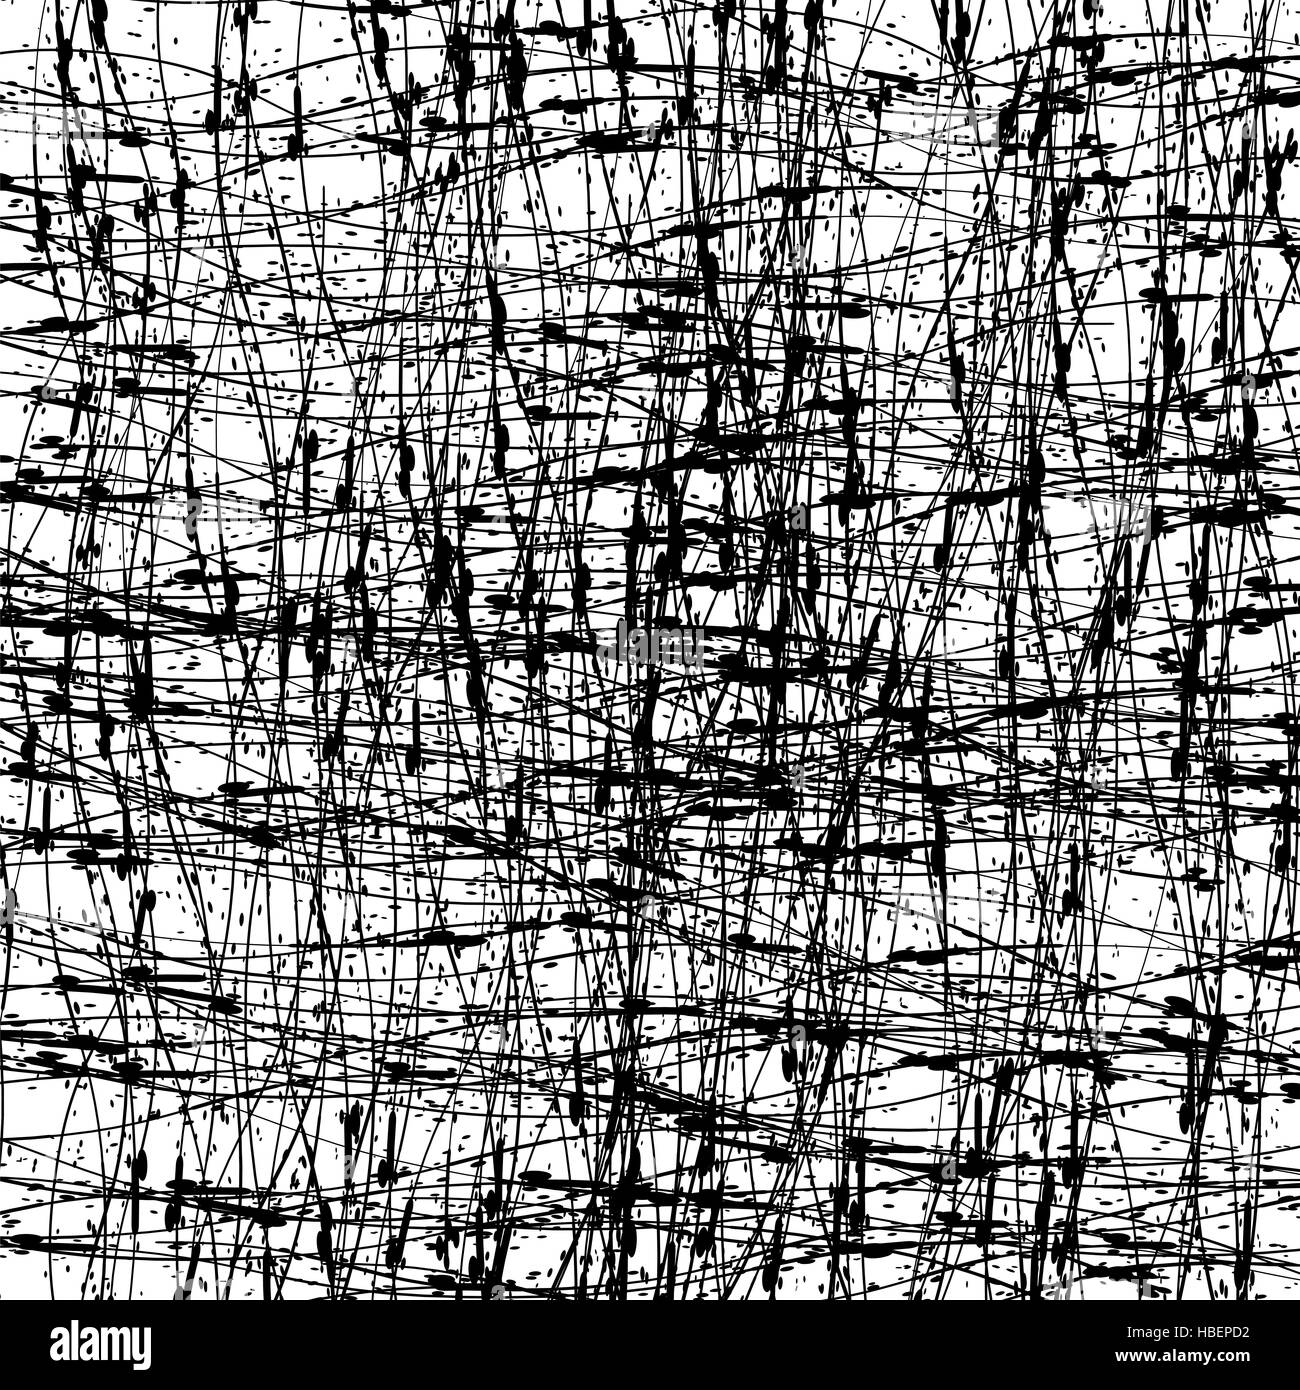 Abstract Grunge Texture. Inchiostro nero lo sfondo Foto Stock